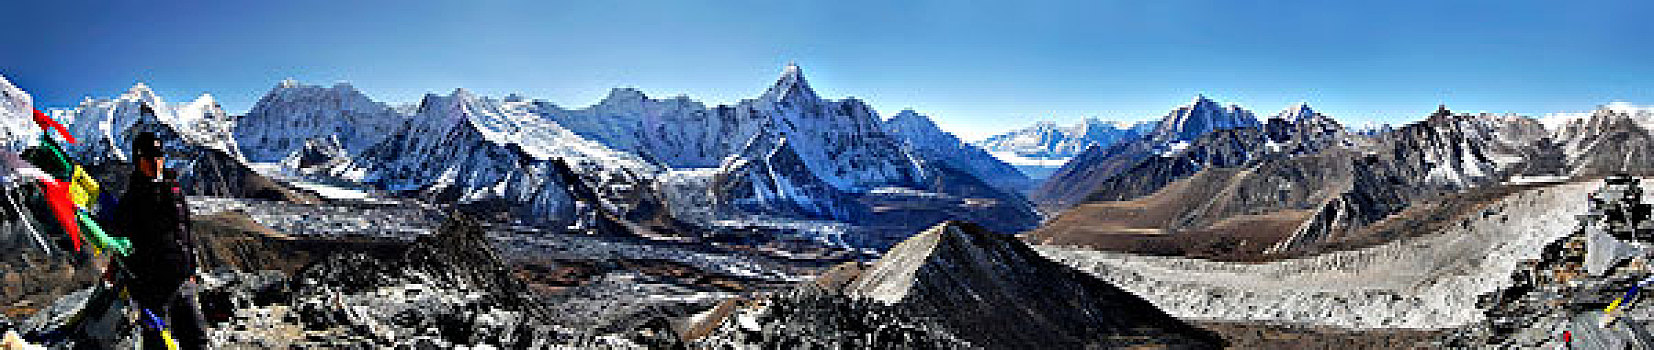 尼泊尔,萨加玛塔,山谷,风景,顶峰